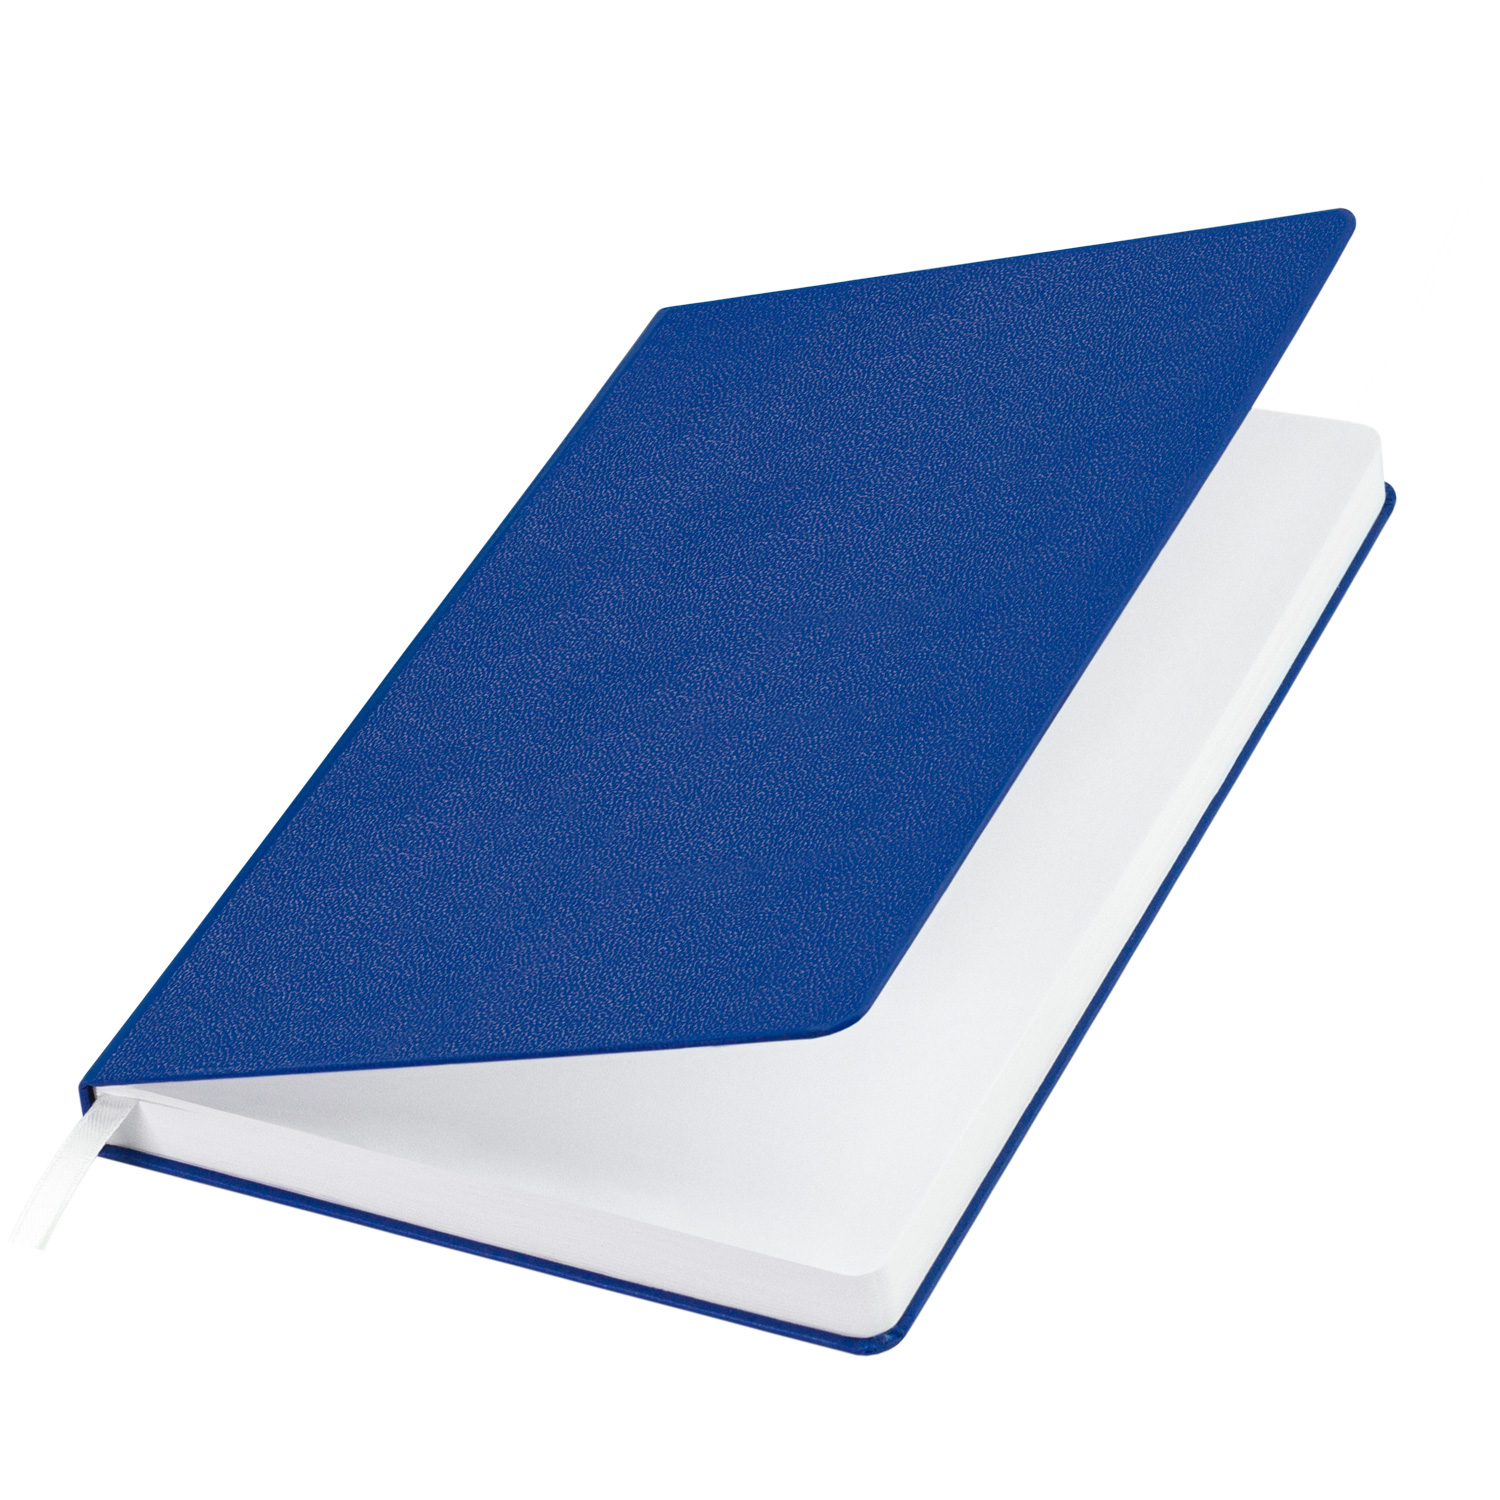 Артикул: A2226069.030 — Ежедневник Portobello Trend Lite, Baladek, недатир. 224 стр., синий